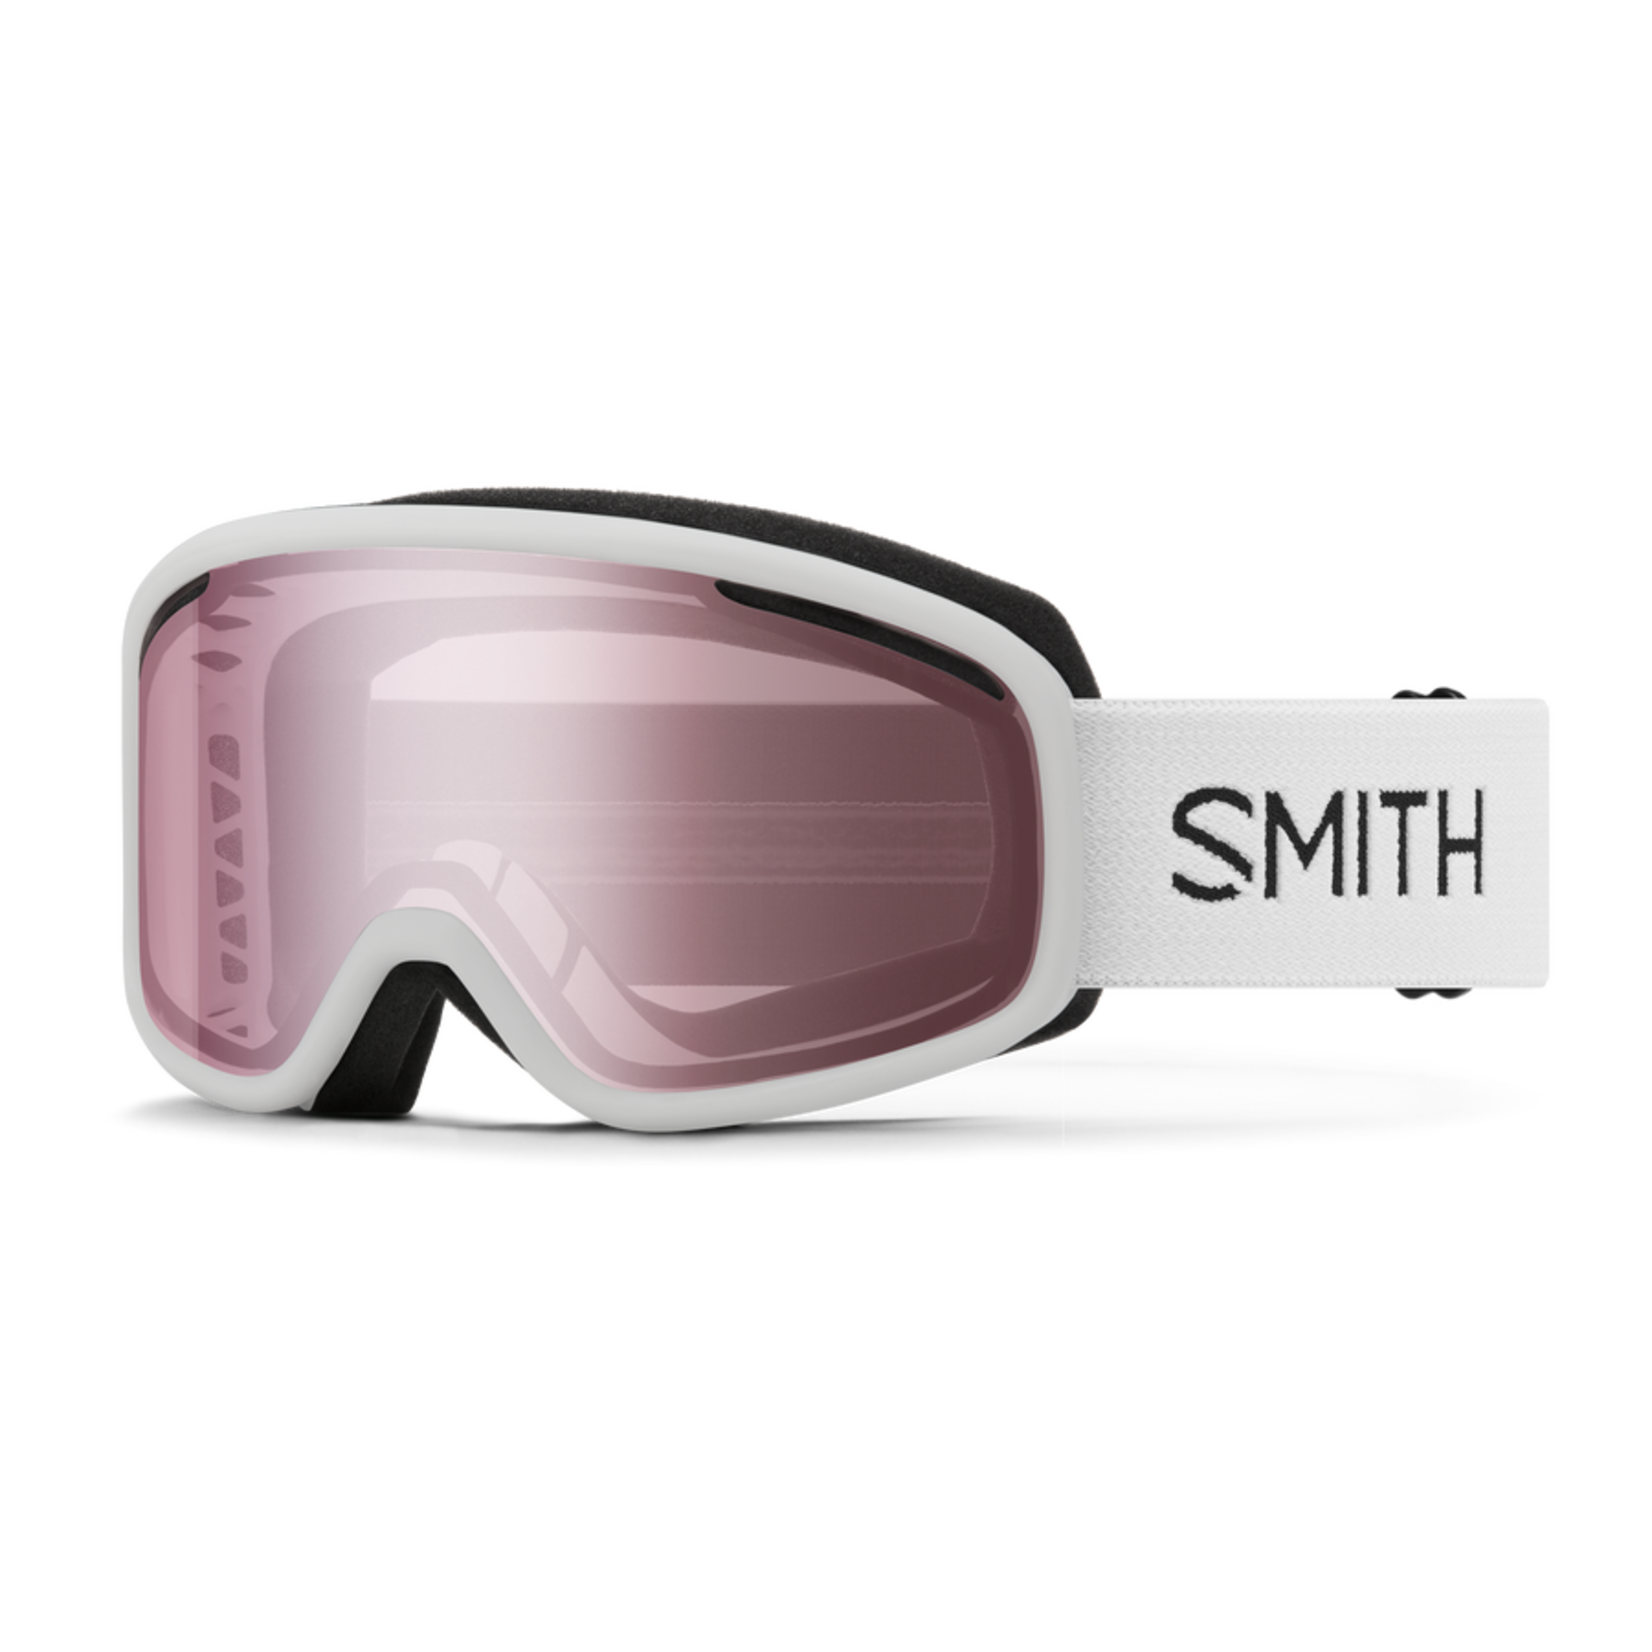 Smith Smith Vogue Goggles